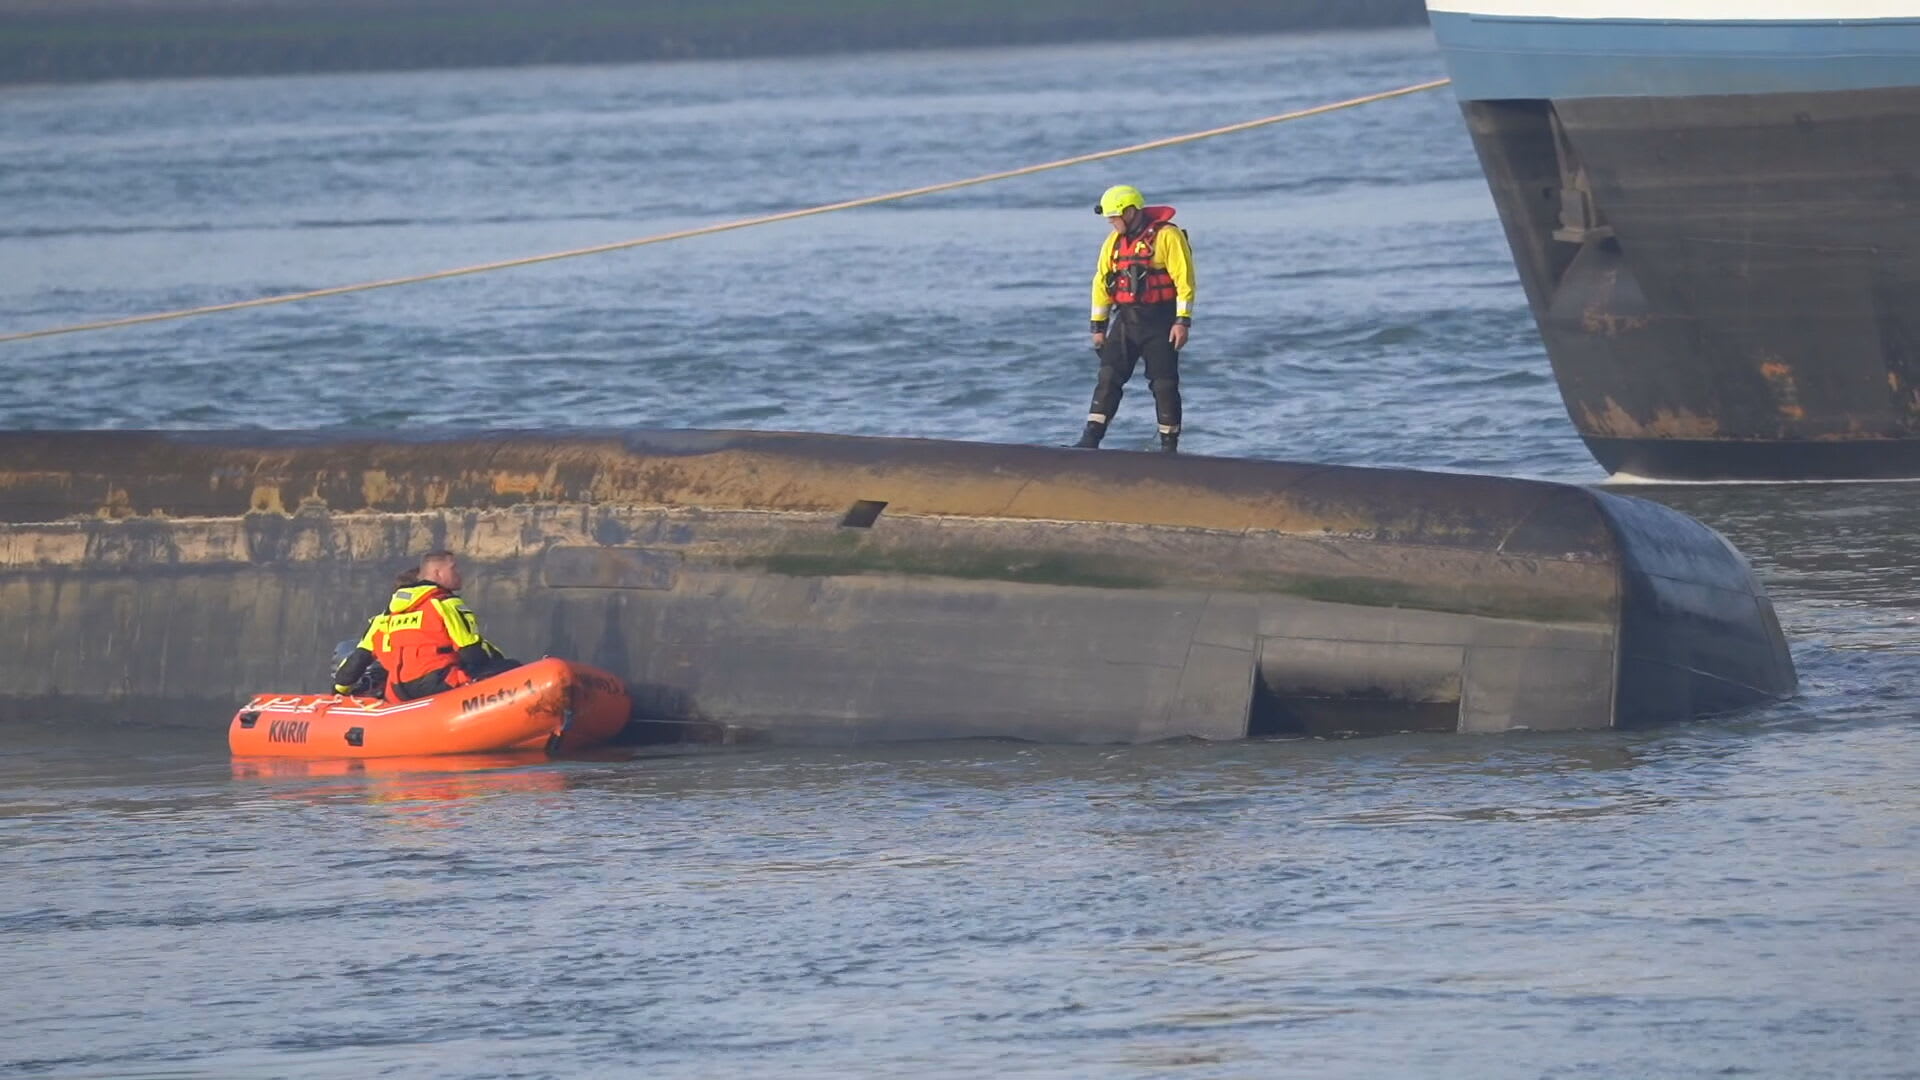 Vermist bemanningslid omgeslagen schip Nieuwe Waterweg vermoedelijk overleden